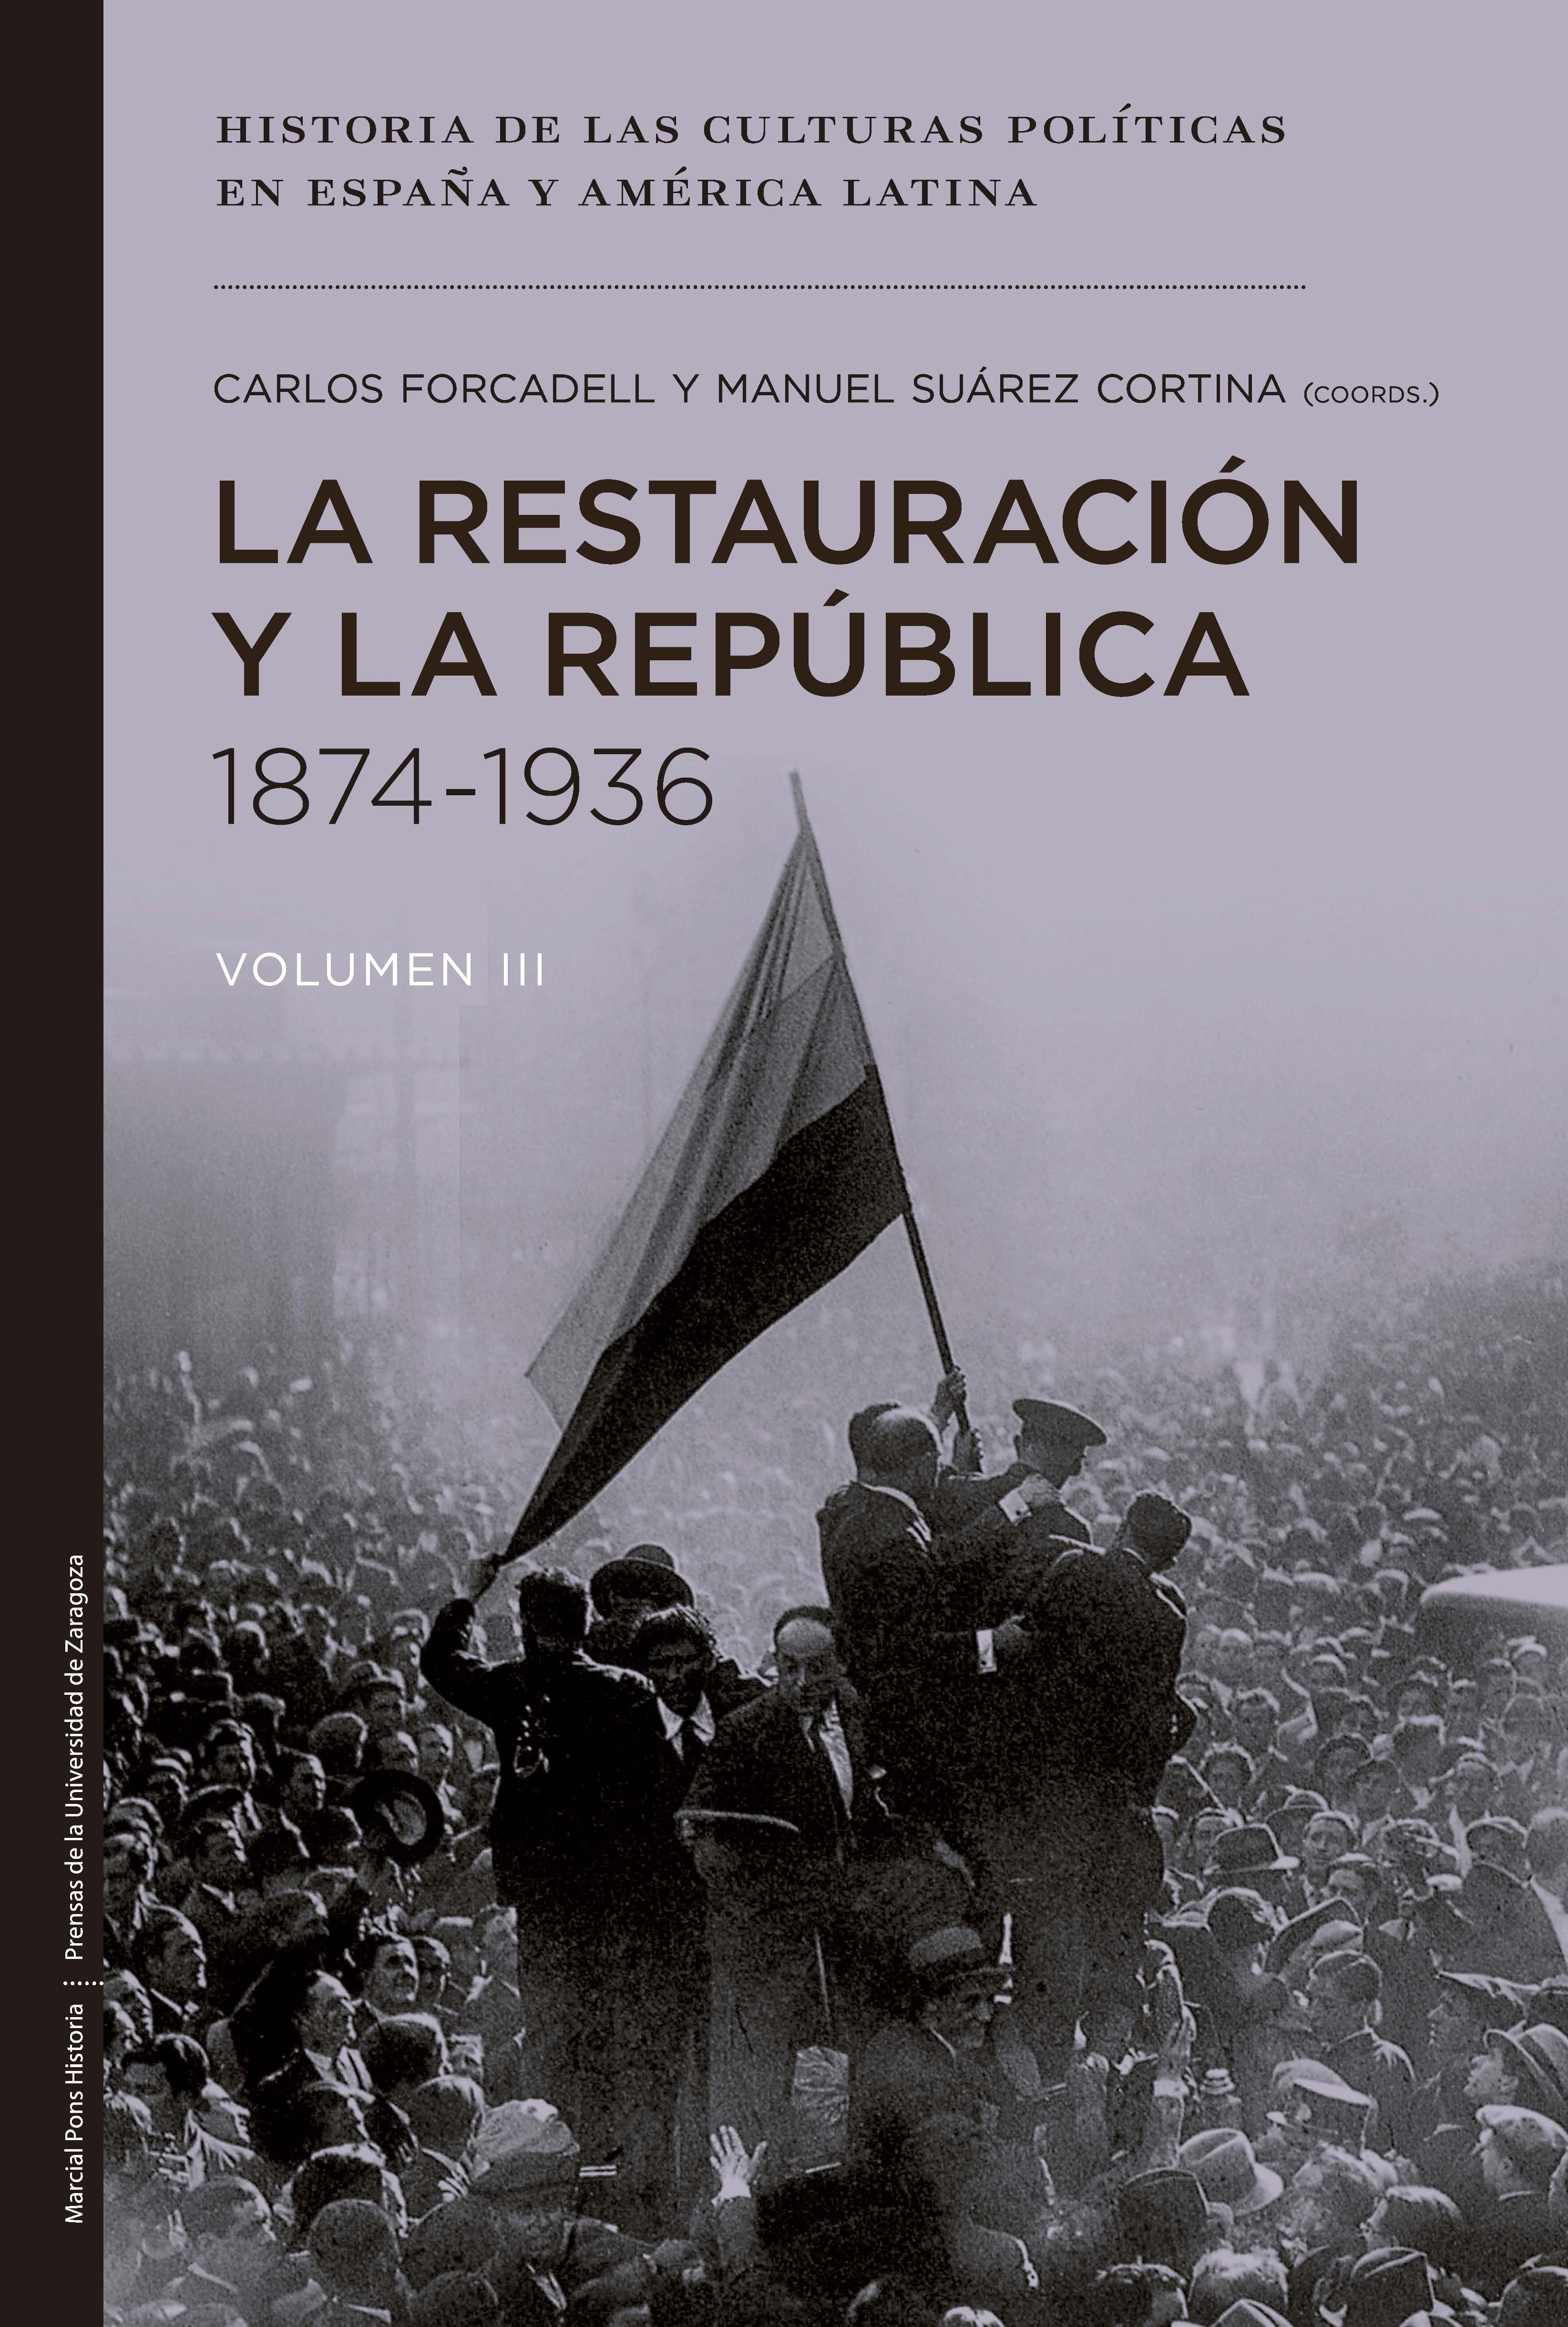 La Restauración y la República 1874-1936